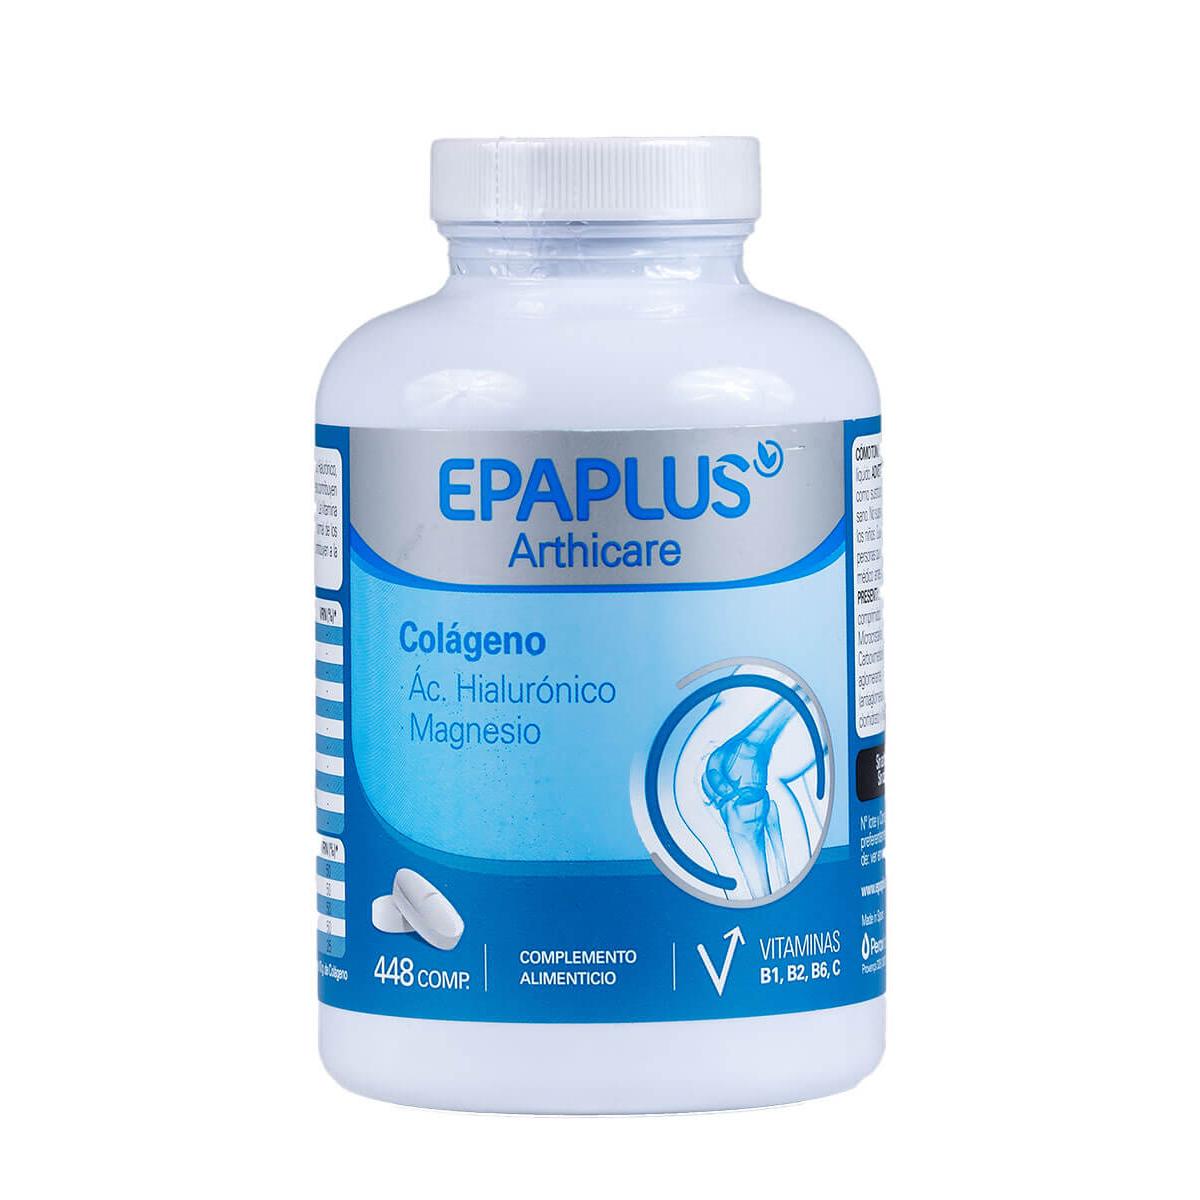 Epaplus - Epaplus arthicare colágeno 448 comprimidos